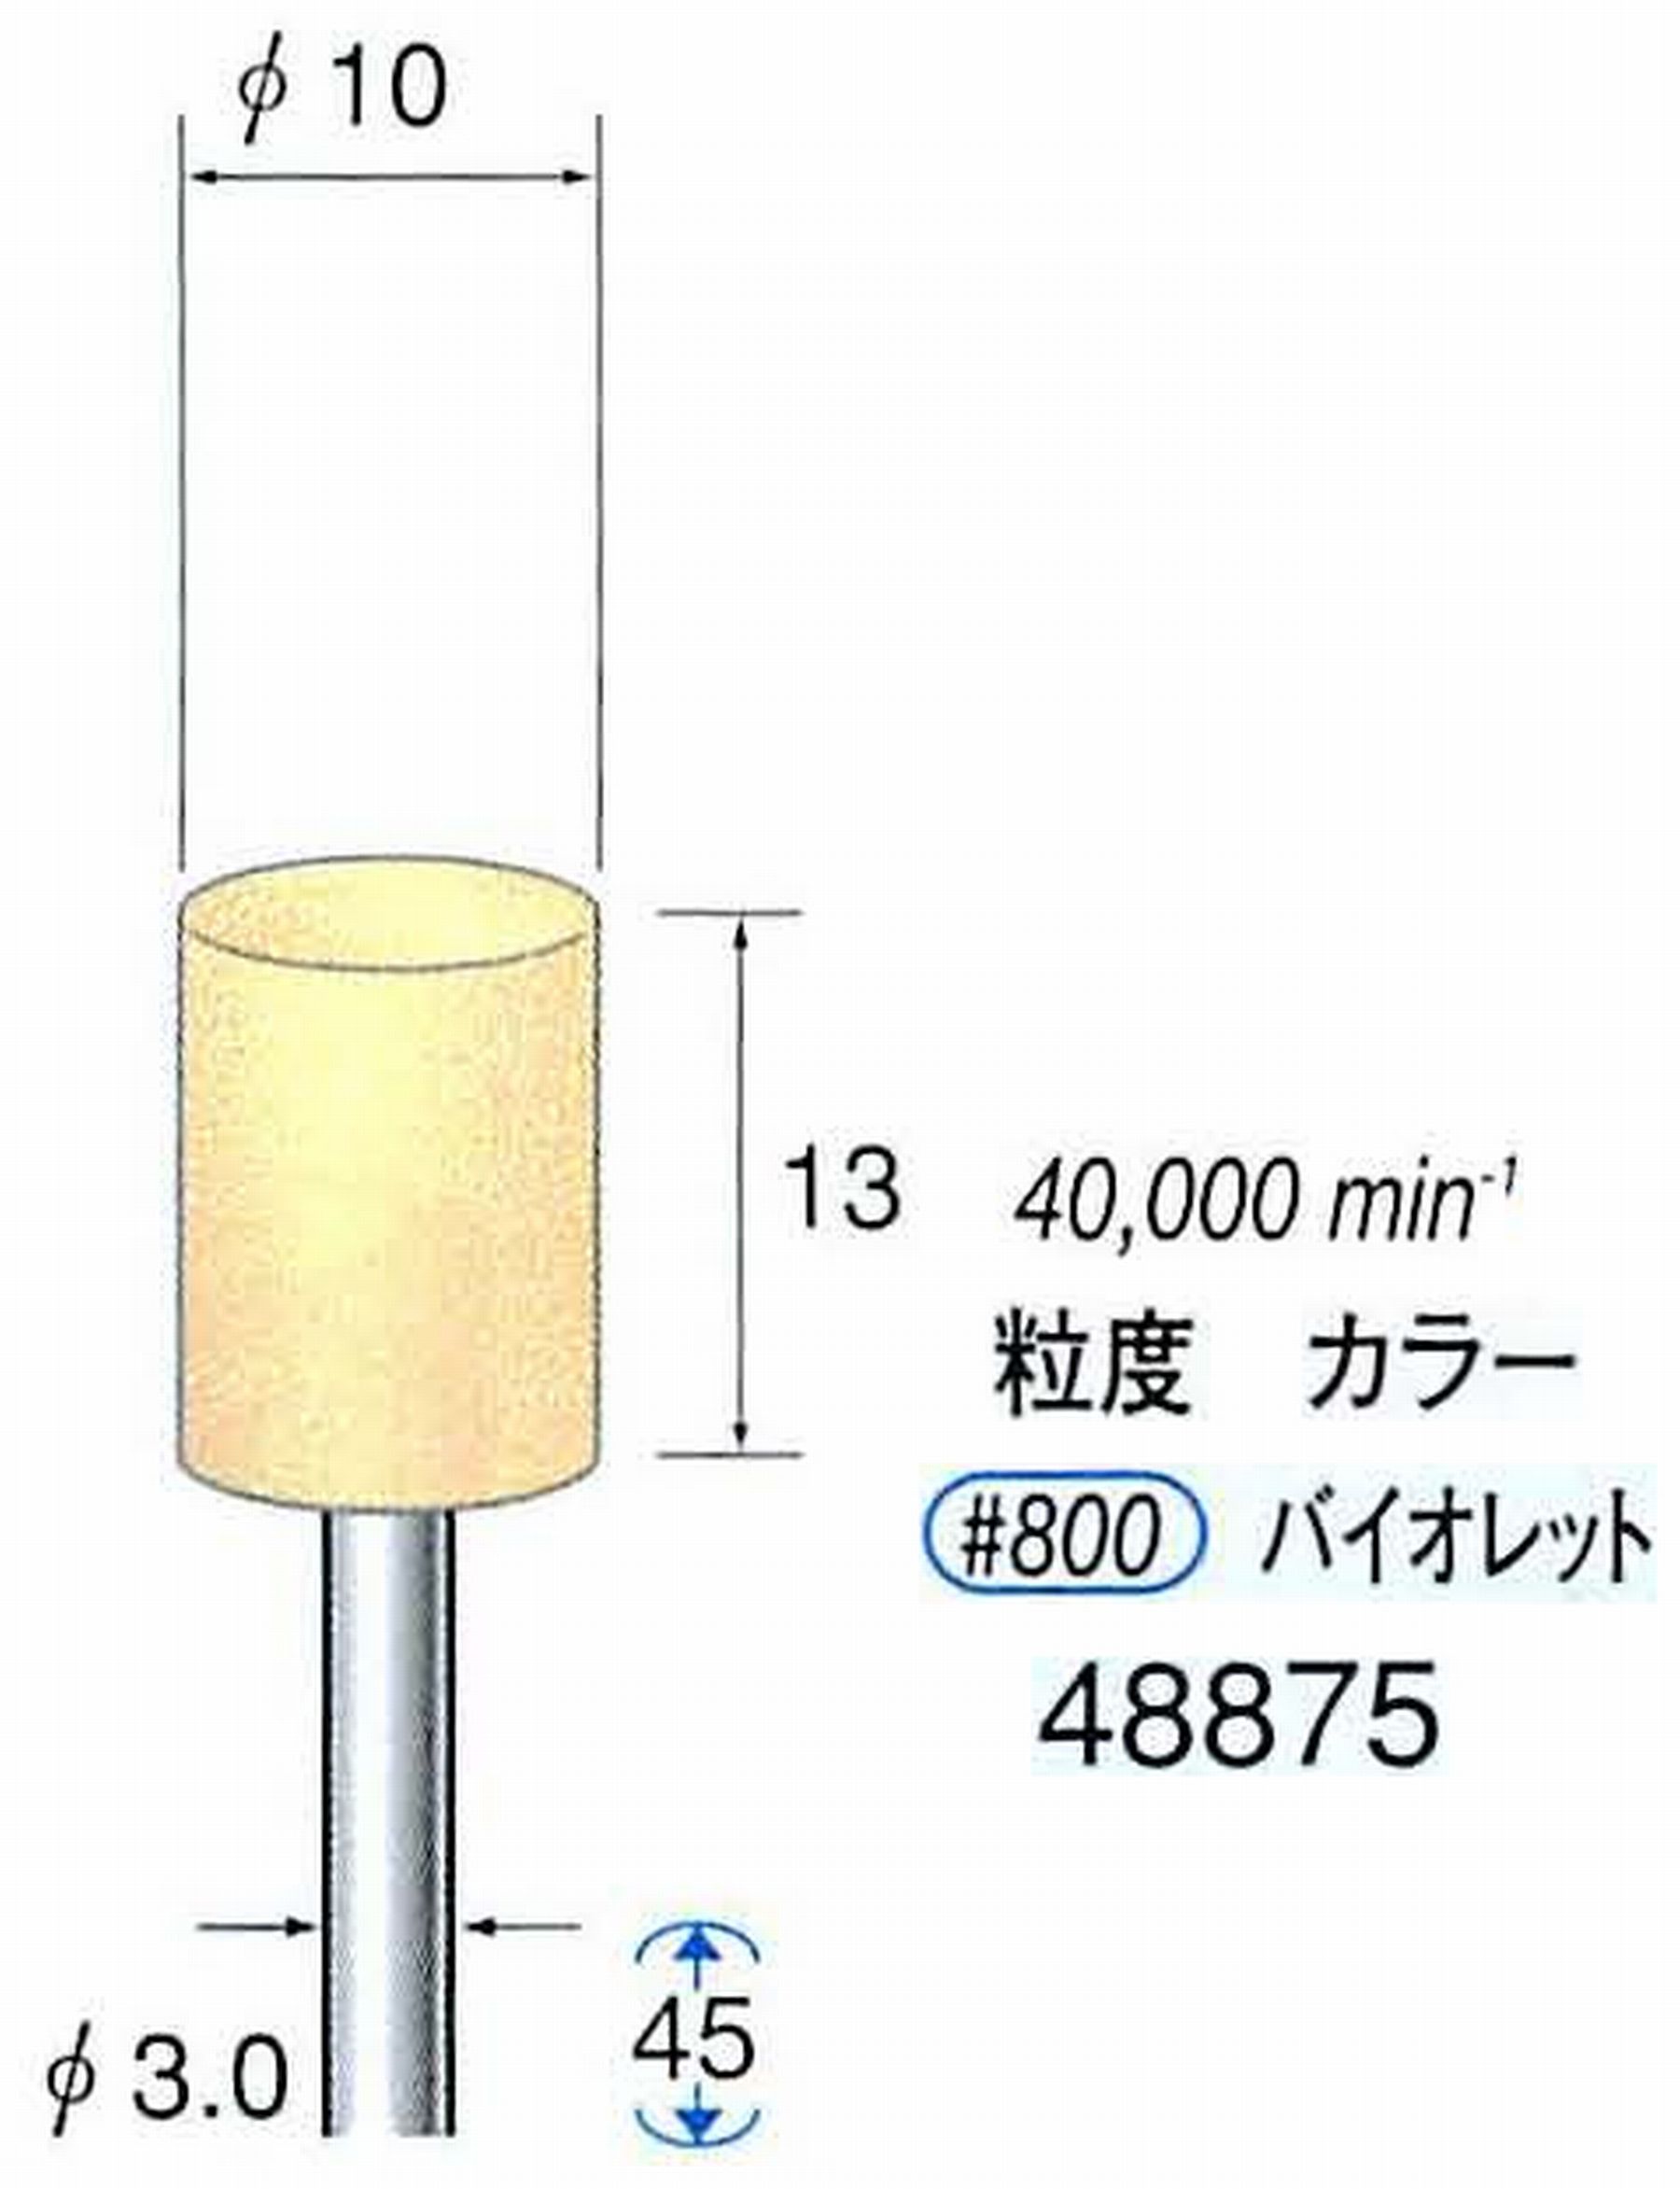 ナカニシ/NAKANISHI ポリッシュサンダー 軸径(シャンク)φ3.0mm 48875